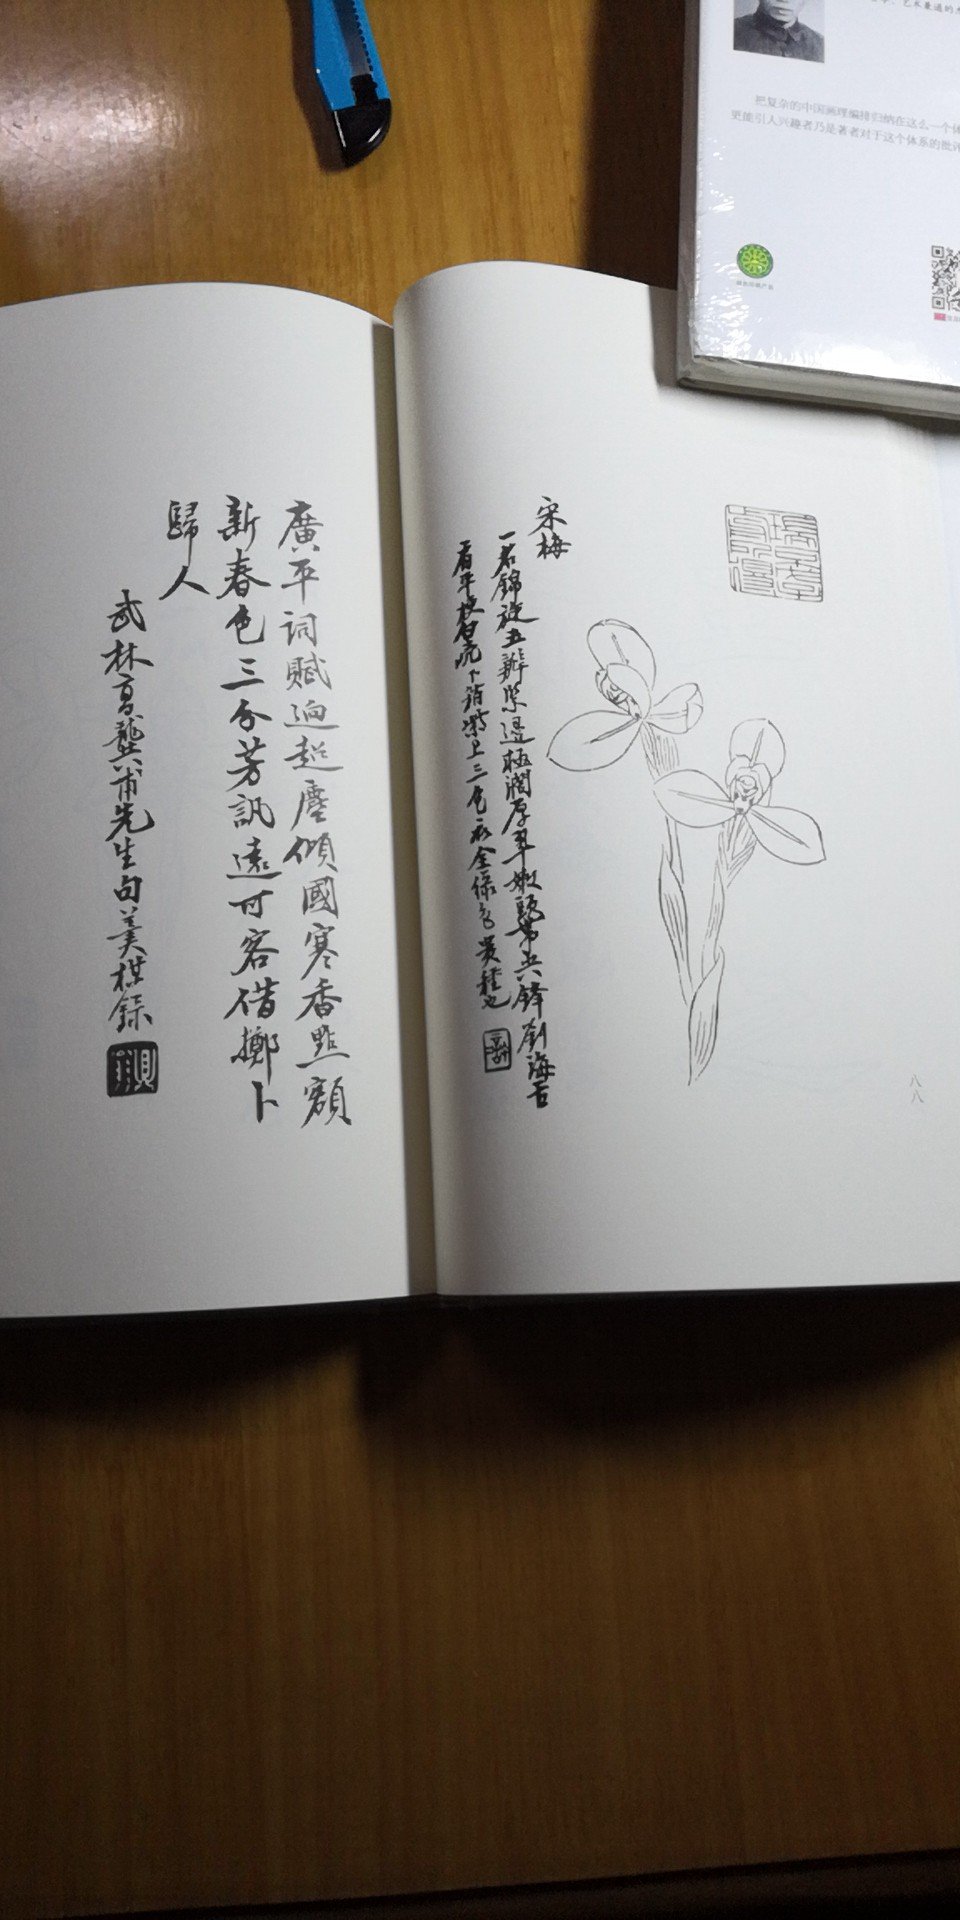 艺兰莳兰佳本，史上首本图文并茂的兰学著作，值得收藏把玩，书法亦可观。